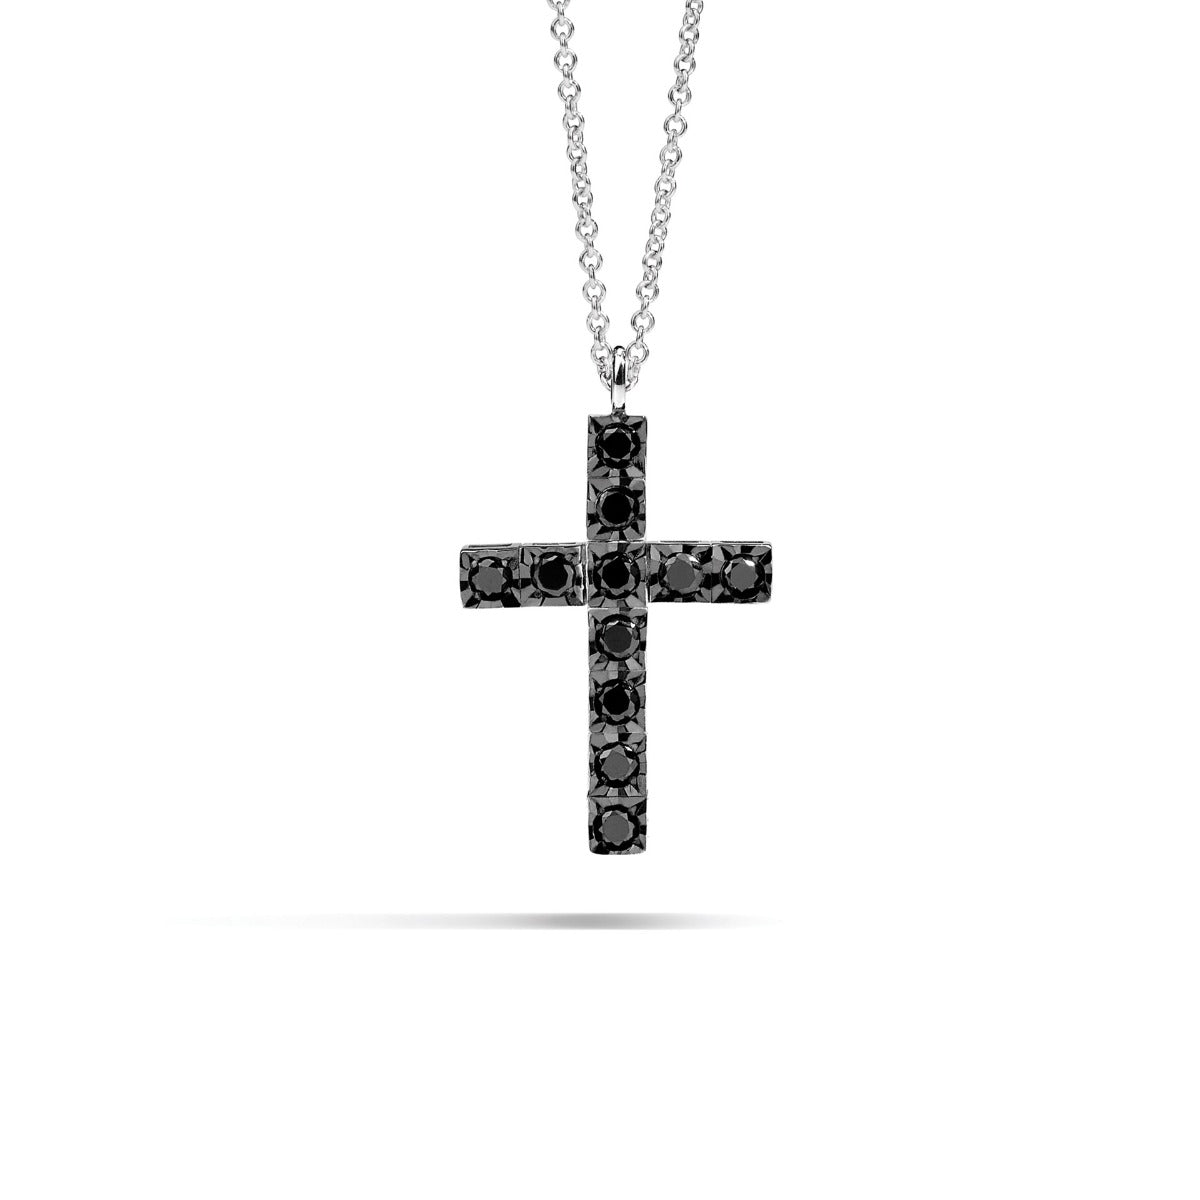 Collier croix homme en or blanc et diamants noirs, 0,10 ct - P39CR882/DK010